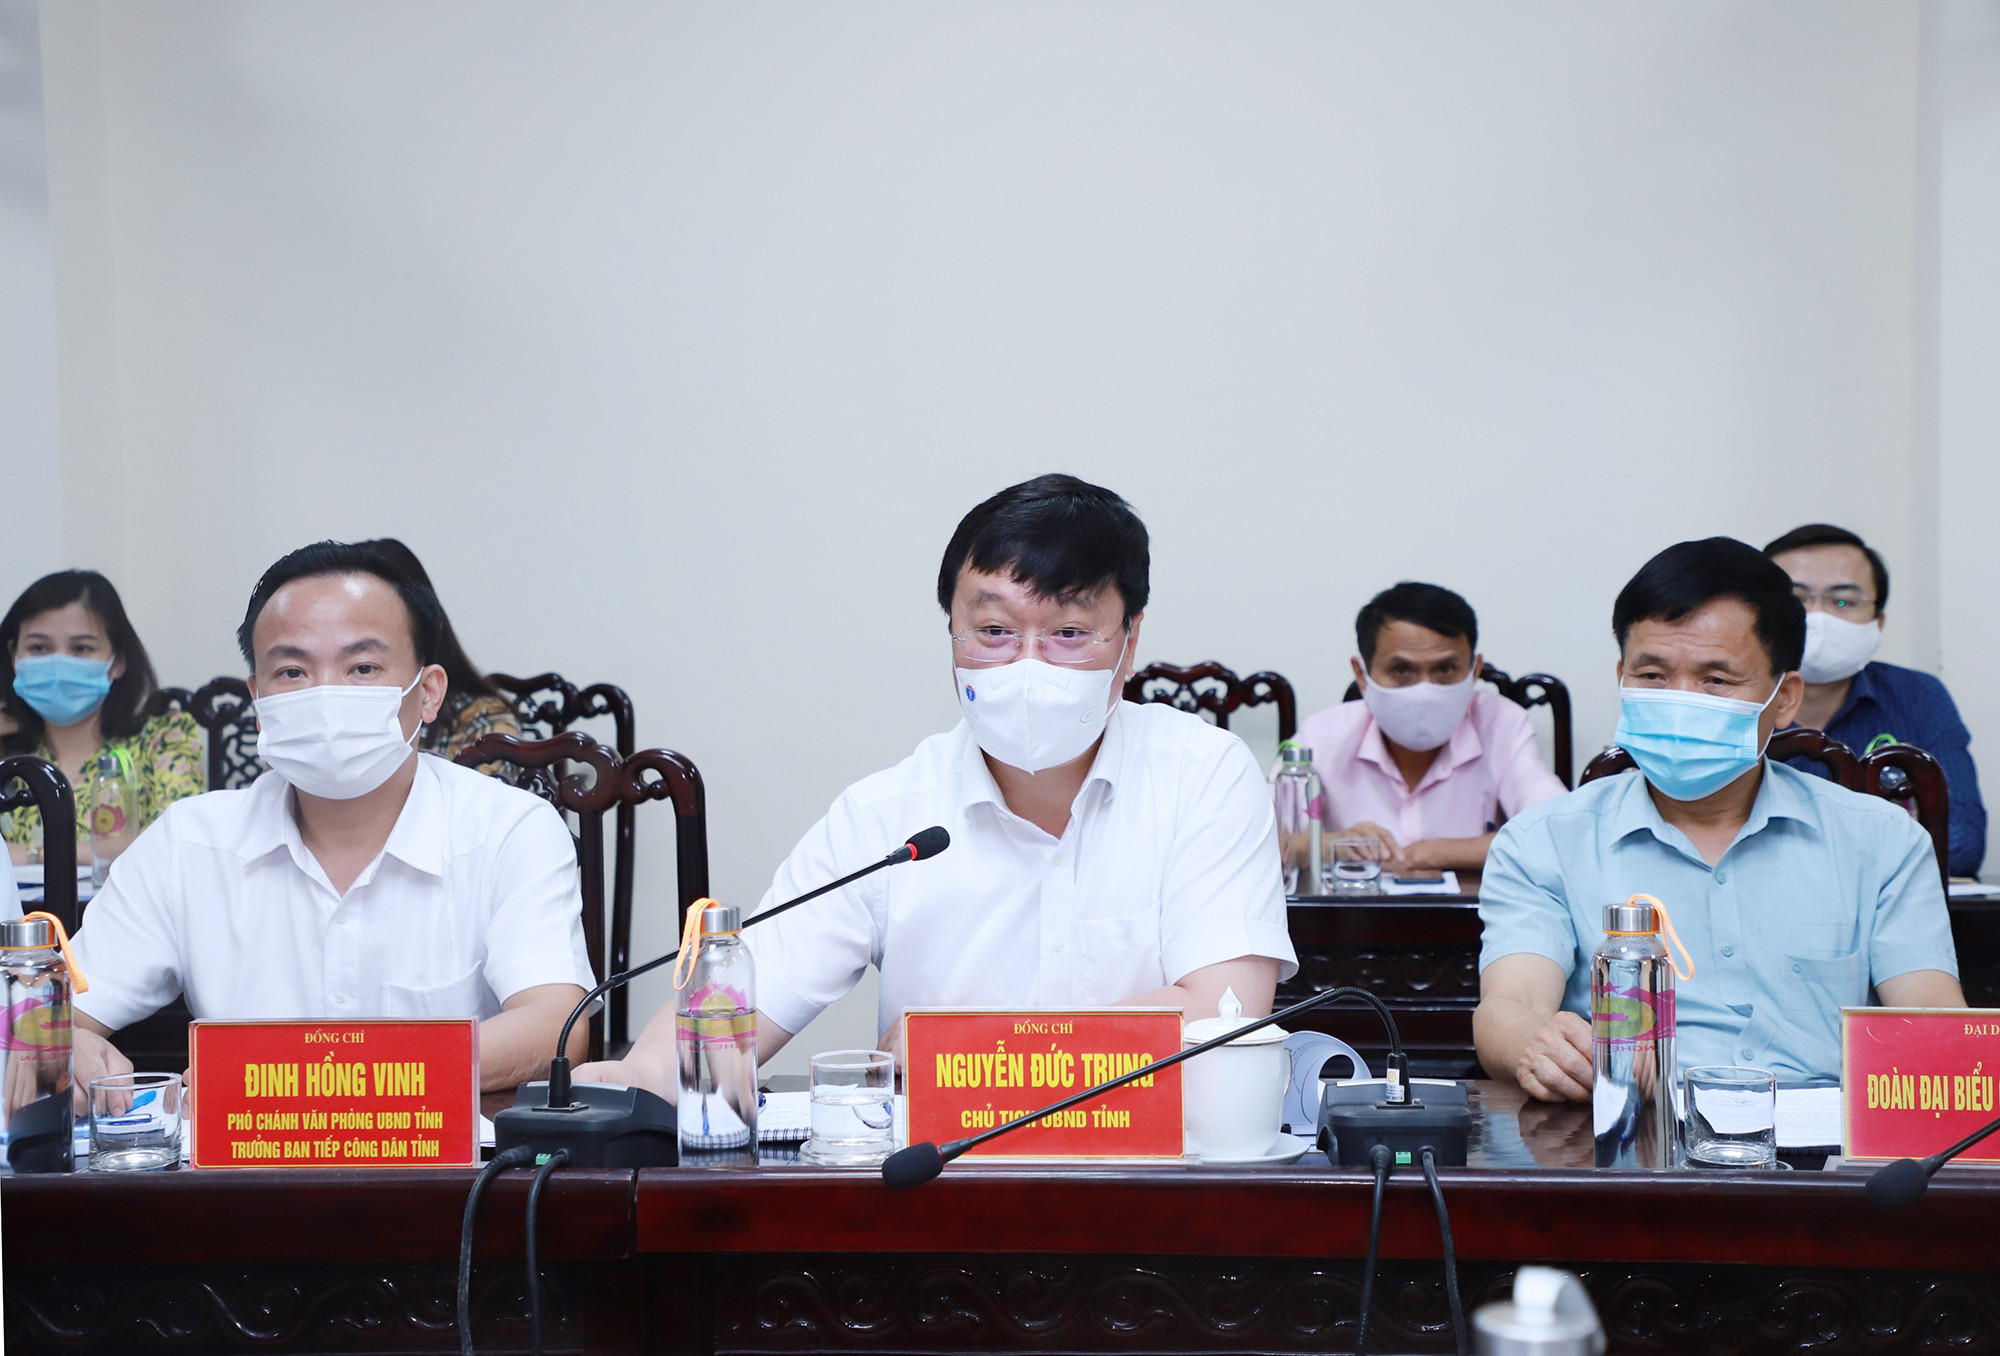 Đồng chí Nguyễn Đức Trung - Chủ tịch UBND tỉnh kết luận phiên tiếp dân. Ảnh: Phạm Bằng